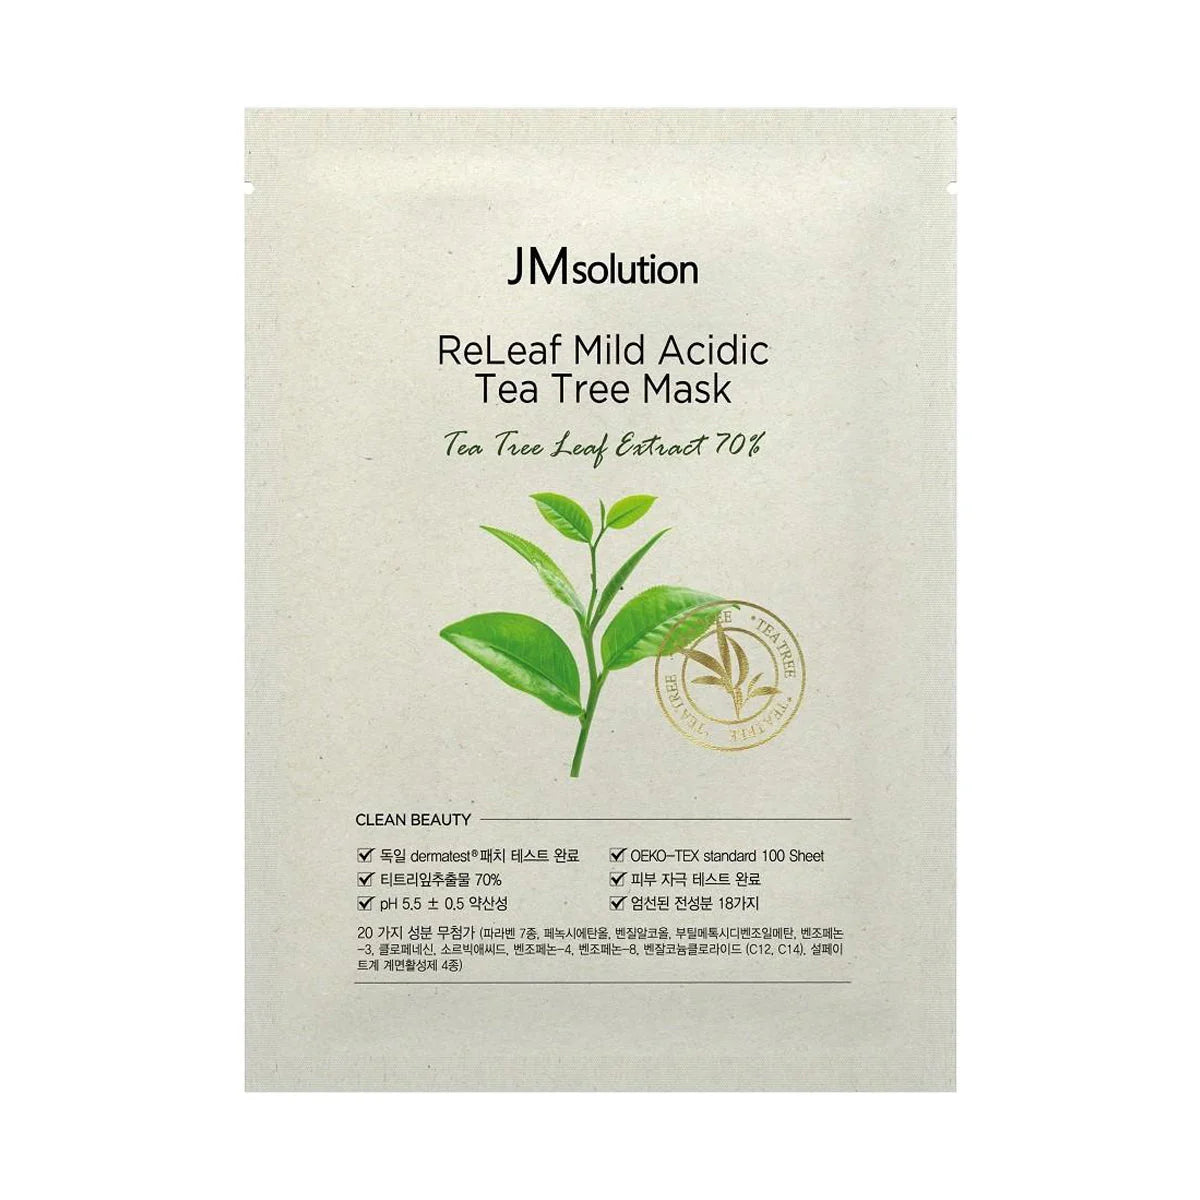 JMsolution ReLeaf Mild Acidic Tea Tree Mask